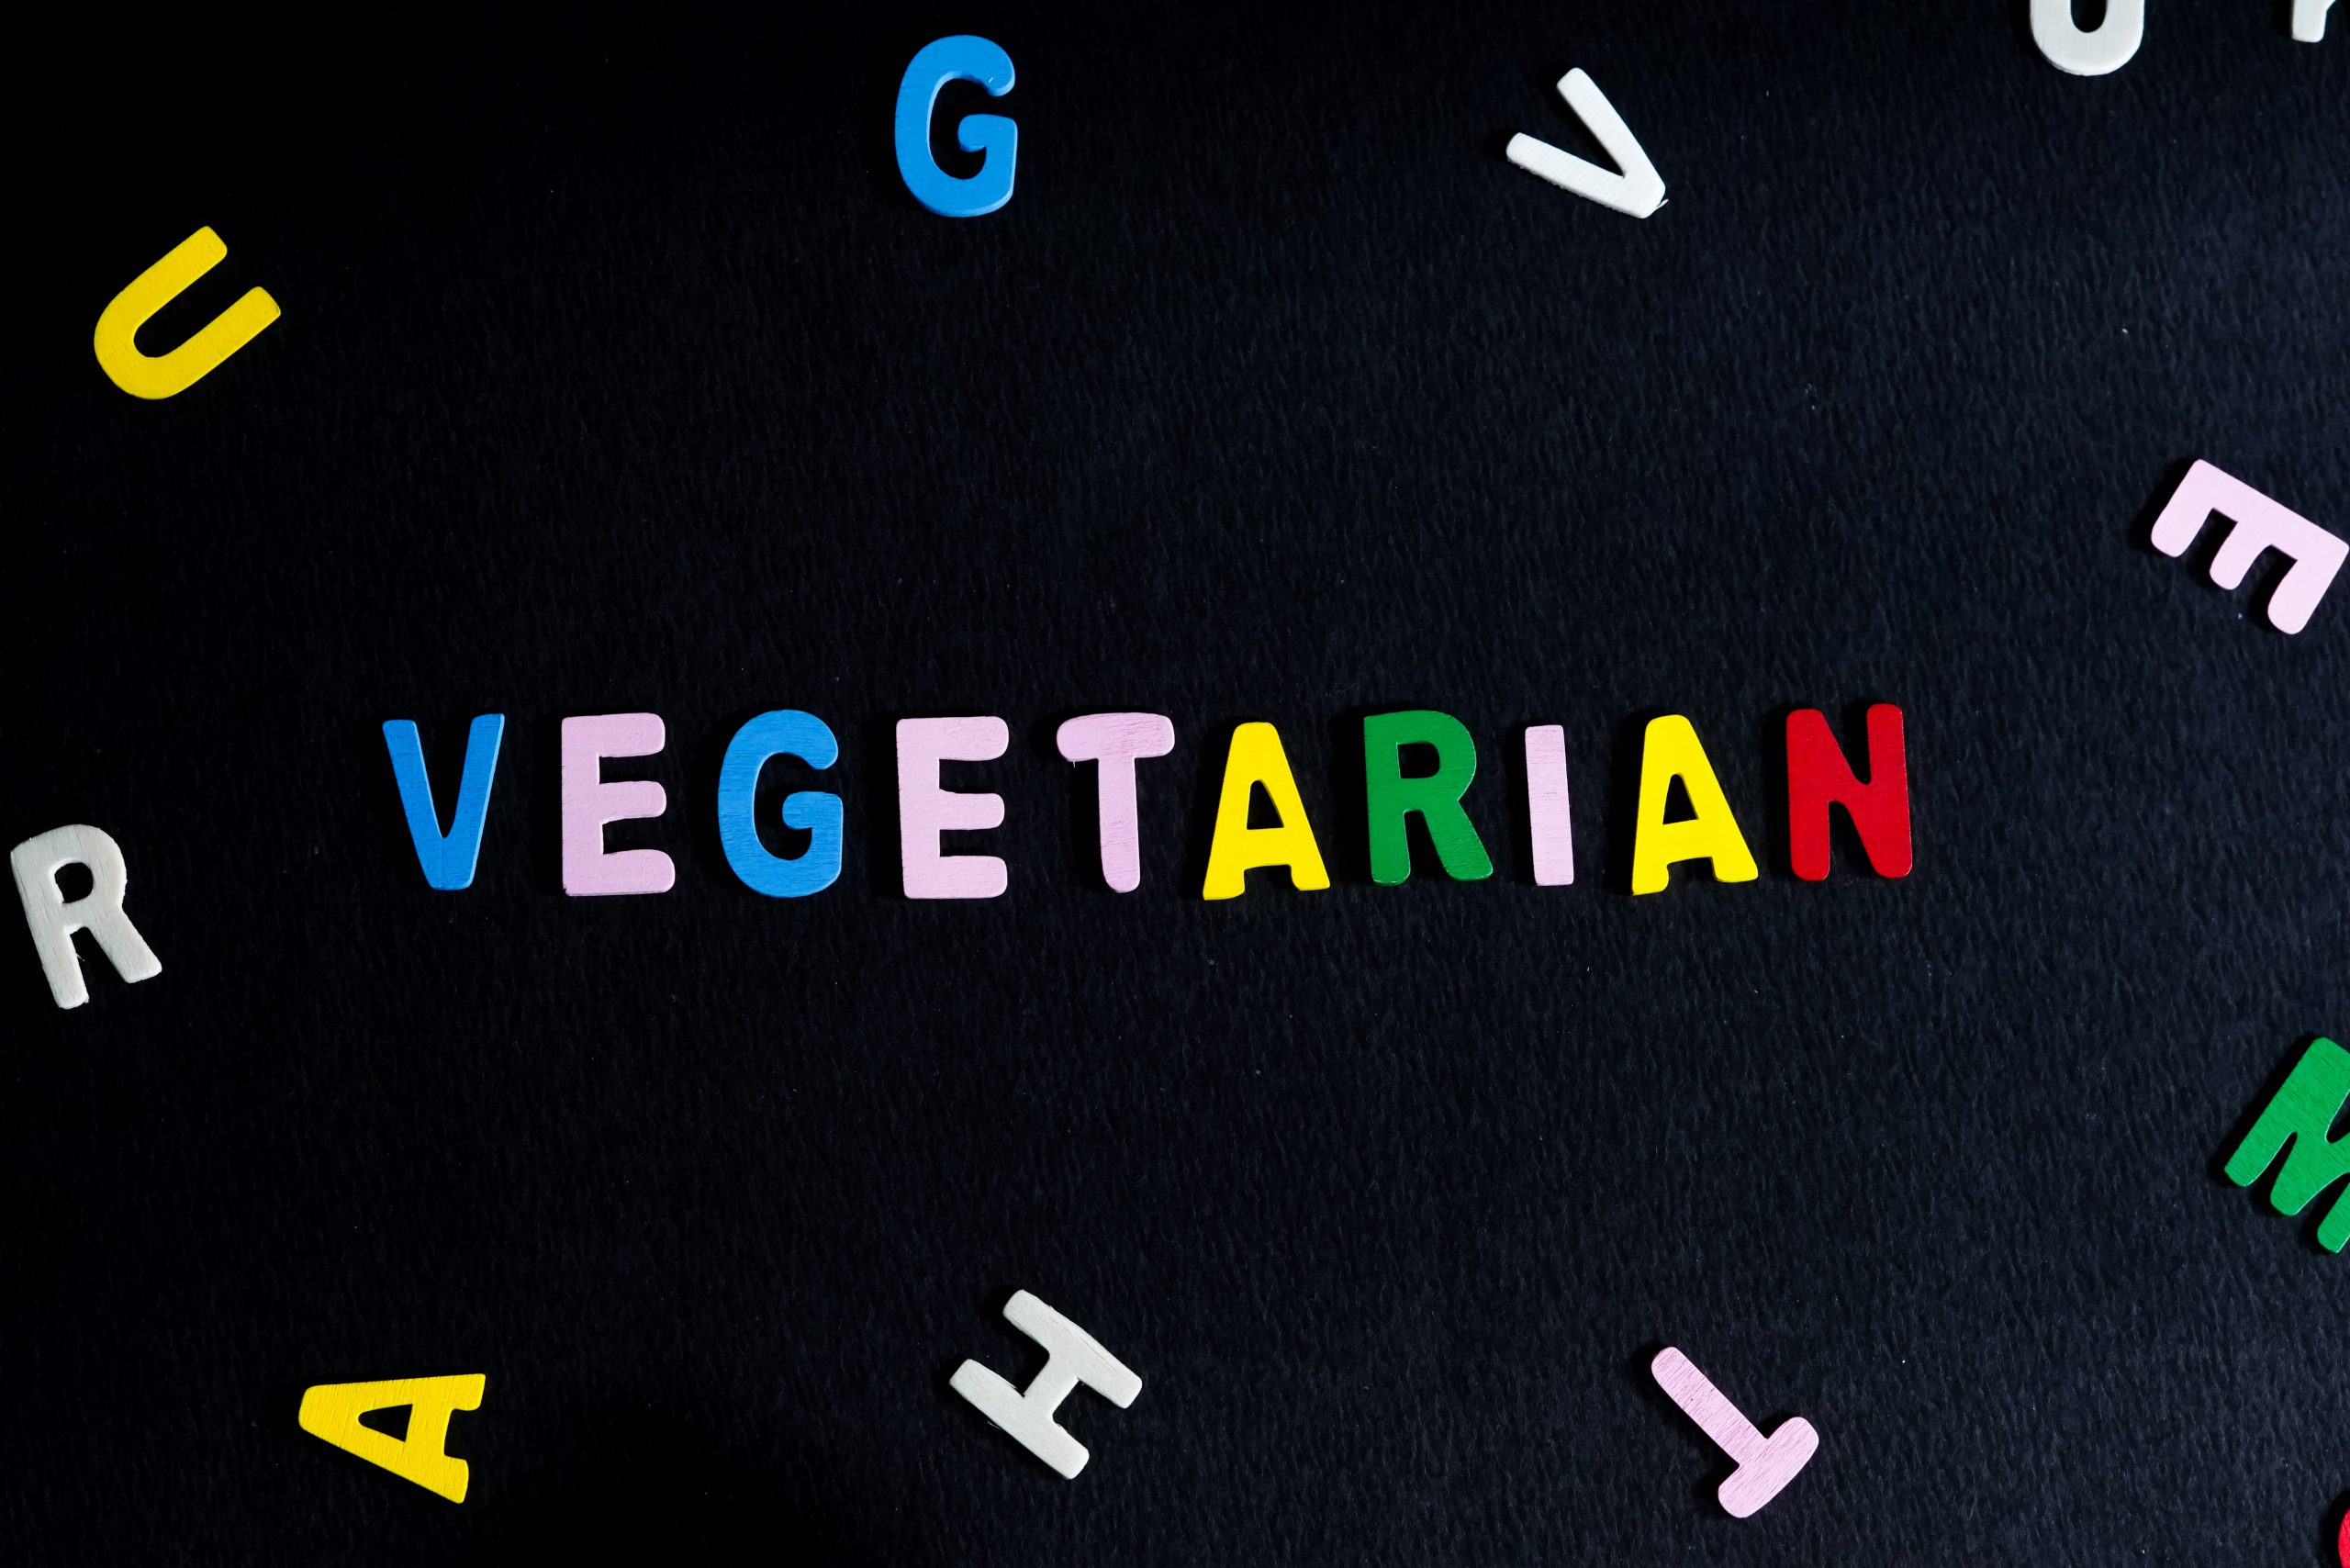 Vegetarian written on scrabble